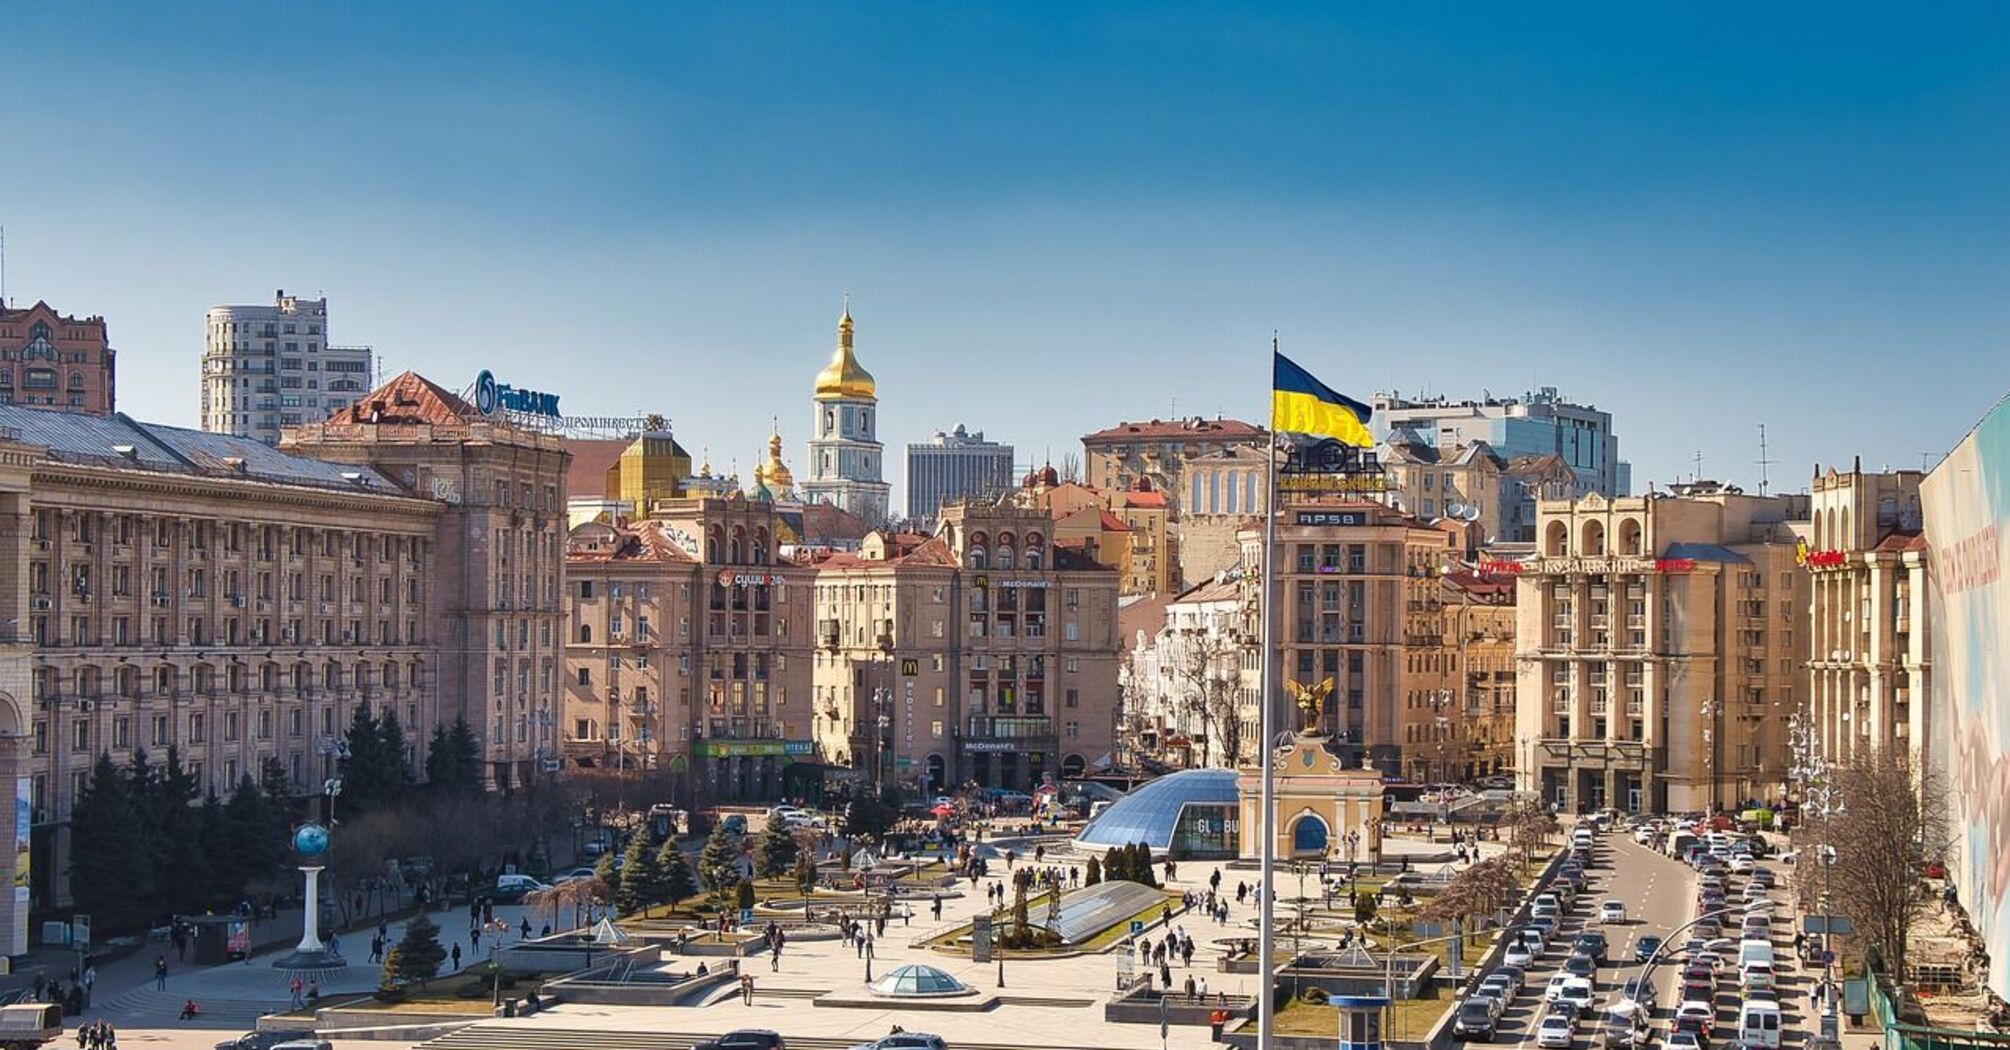 Ukraine is preparing to restore tourism after the war